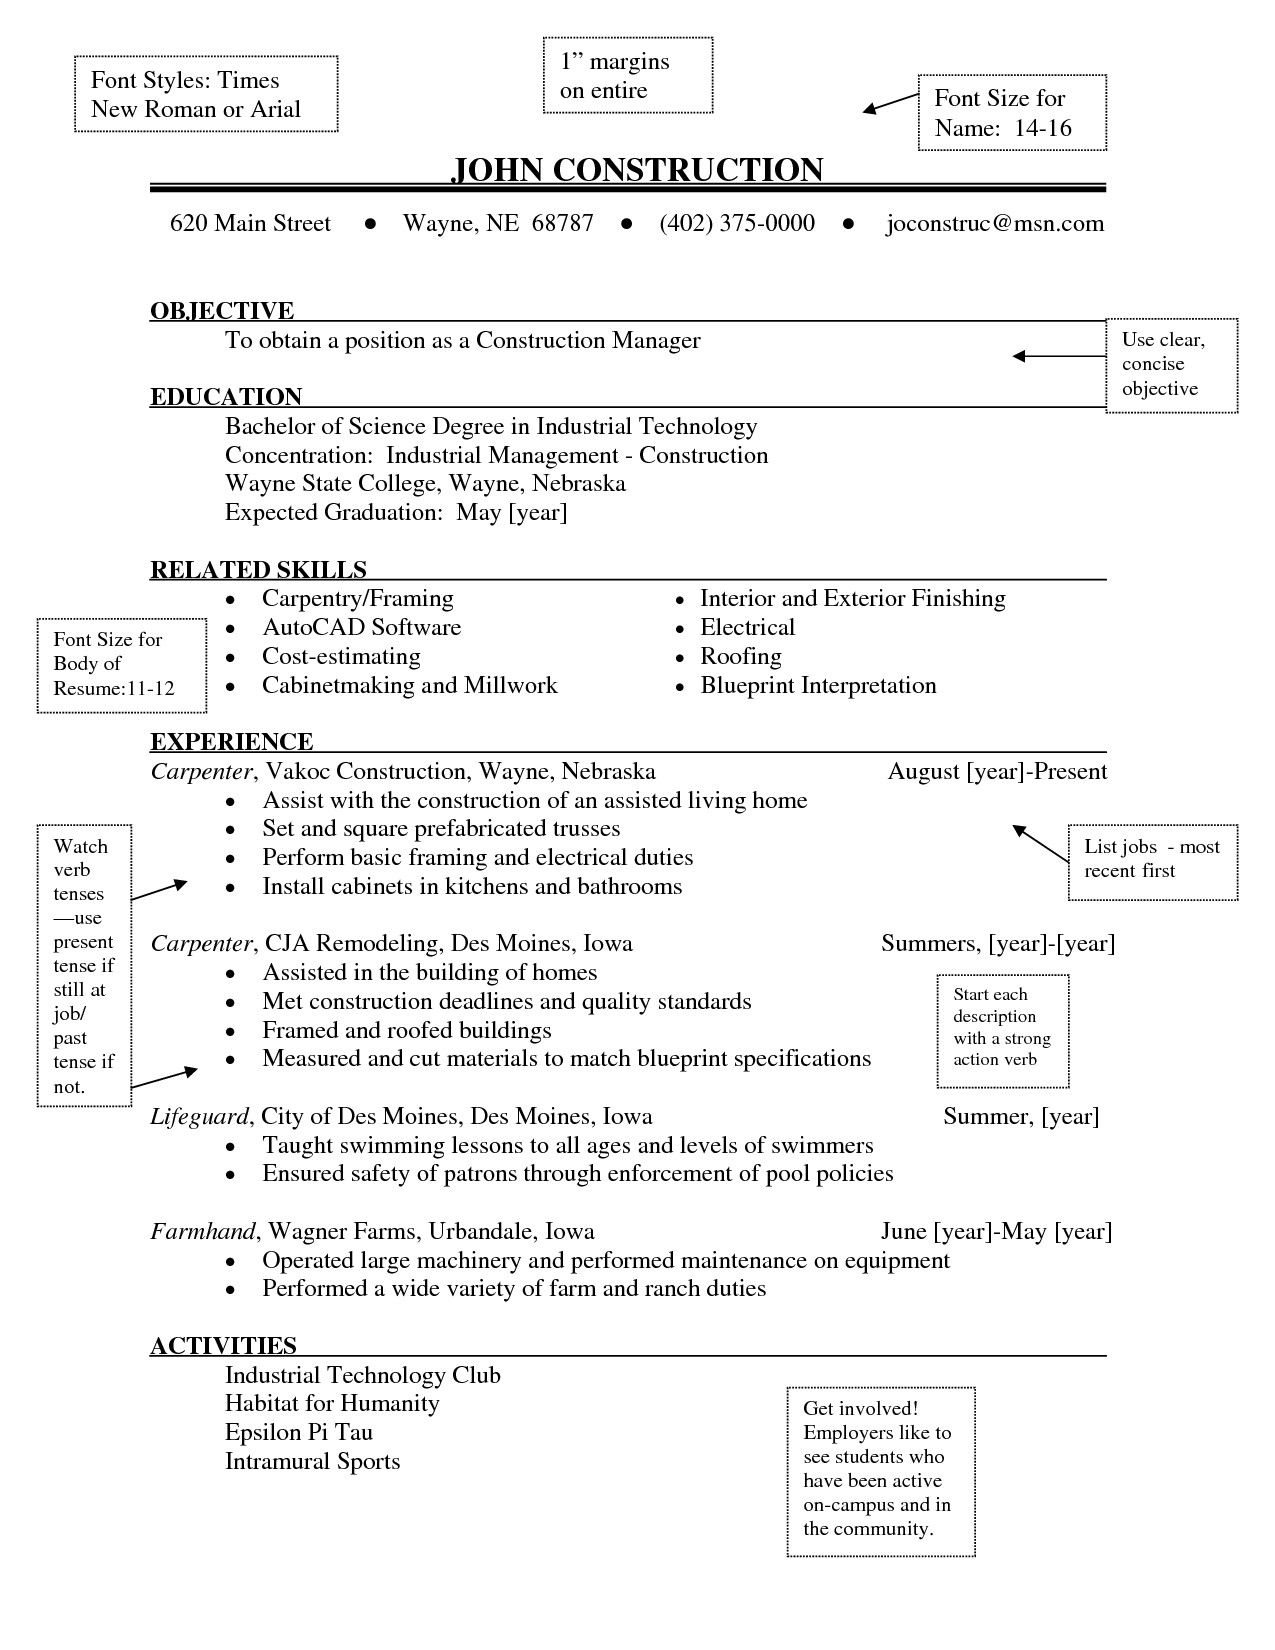 Resume Format Letter Size